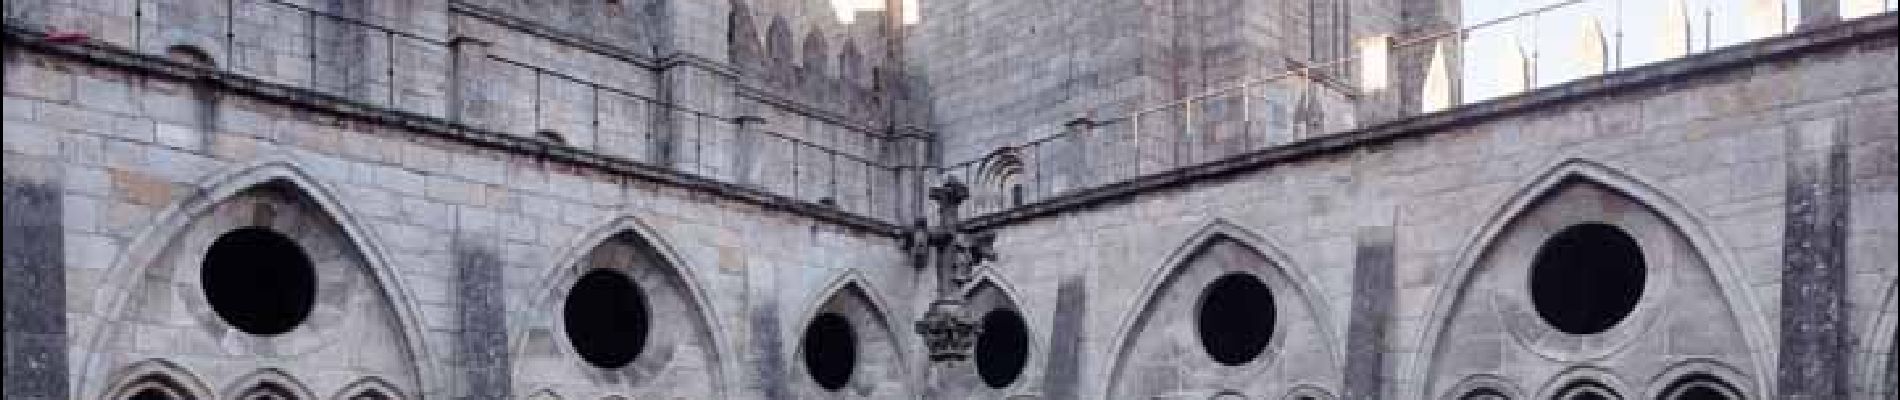 POI Cedofeita, Santo Ildefonso, Sé, Miragaia, São Nicolau e Vitória - Sé do Porto (cathedrale) - Photo